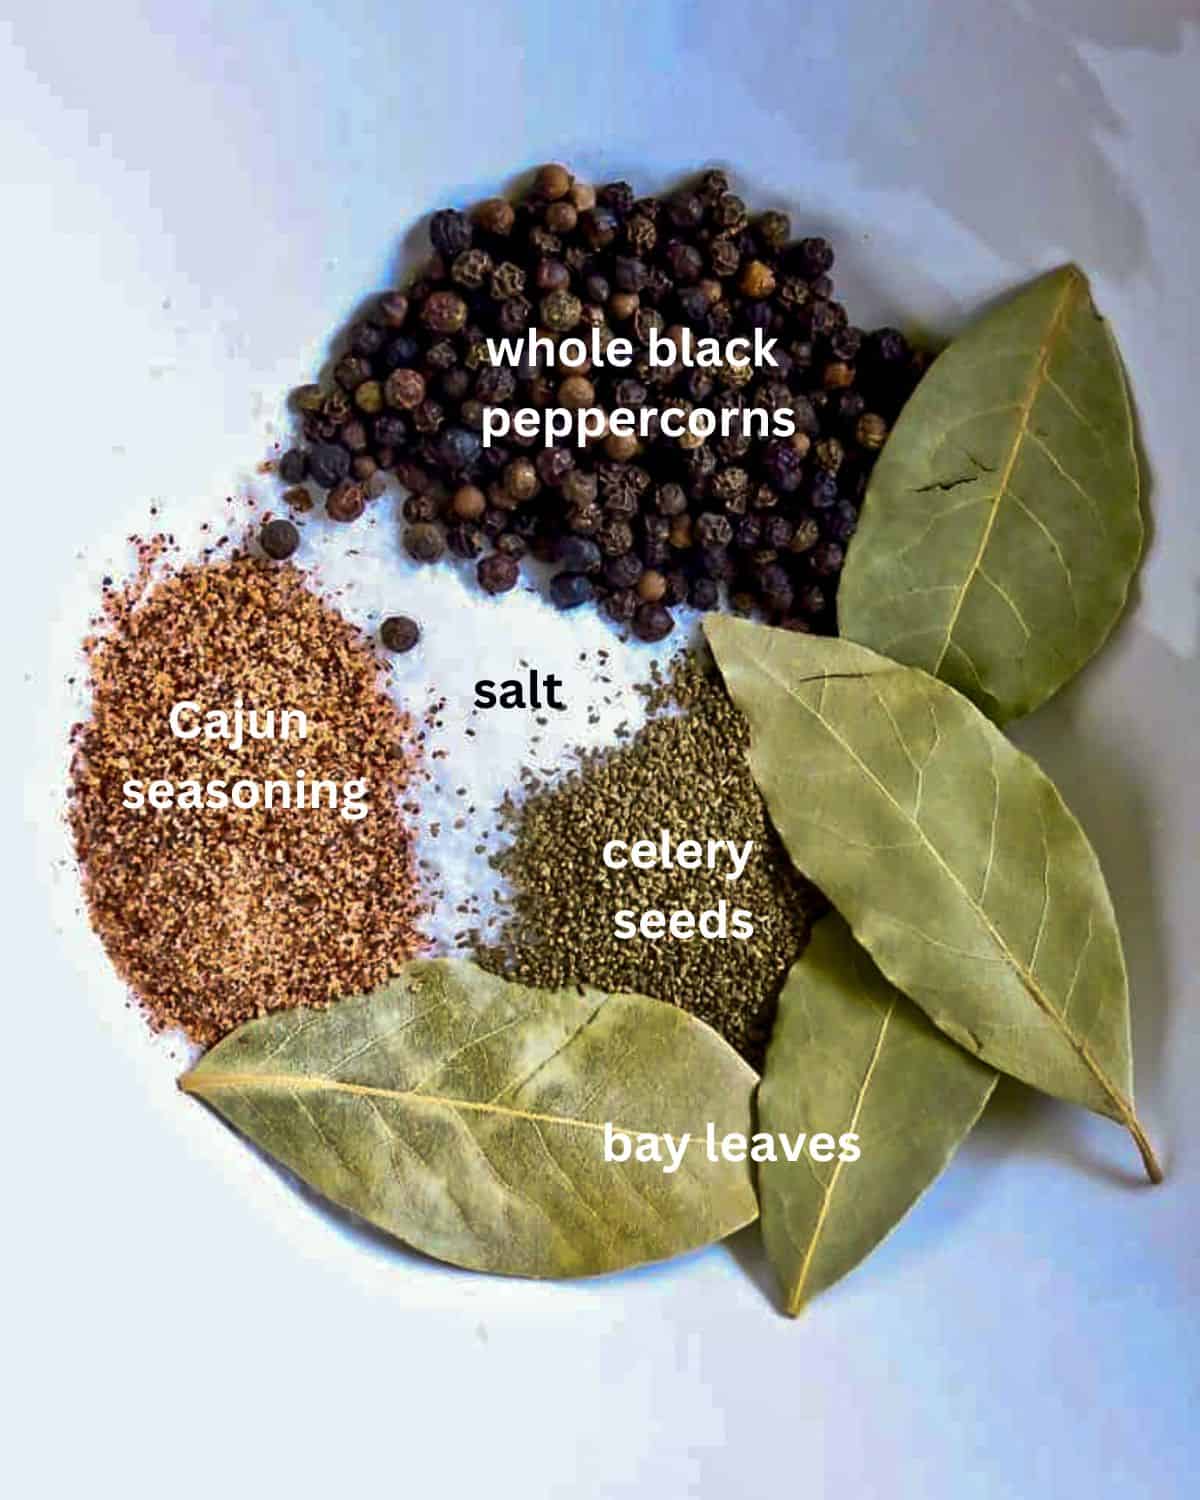 Seasonings of salt, peppercorns, Cajun seasoning, celery seeds, and bay leaves in a white bowl.